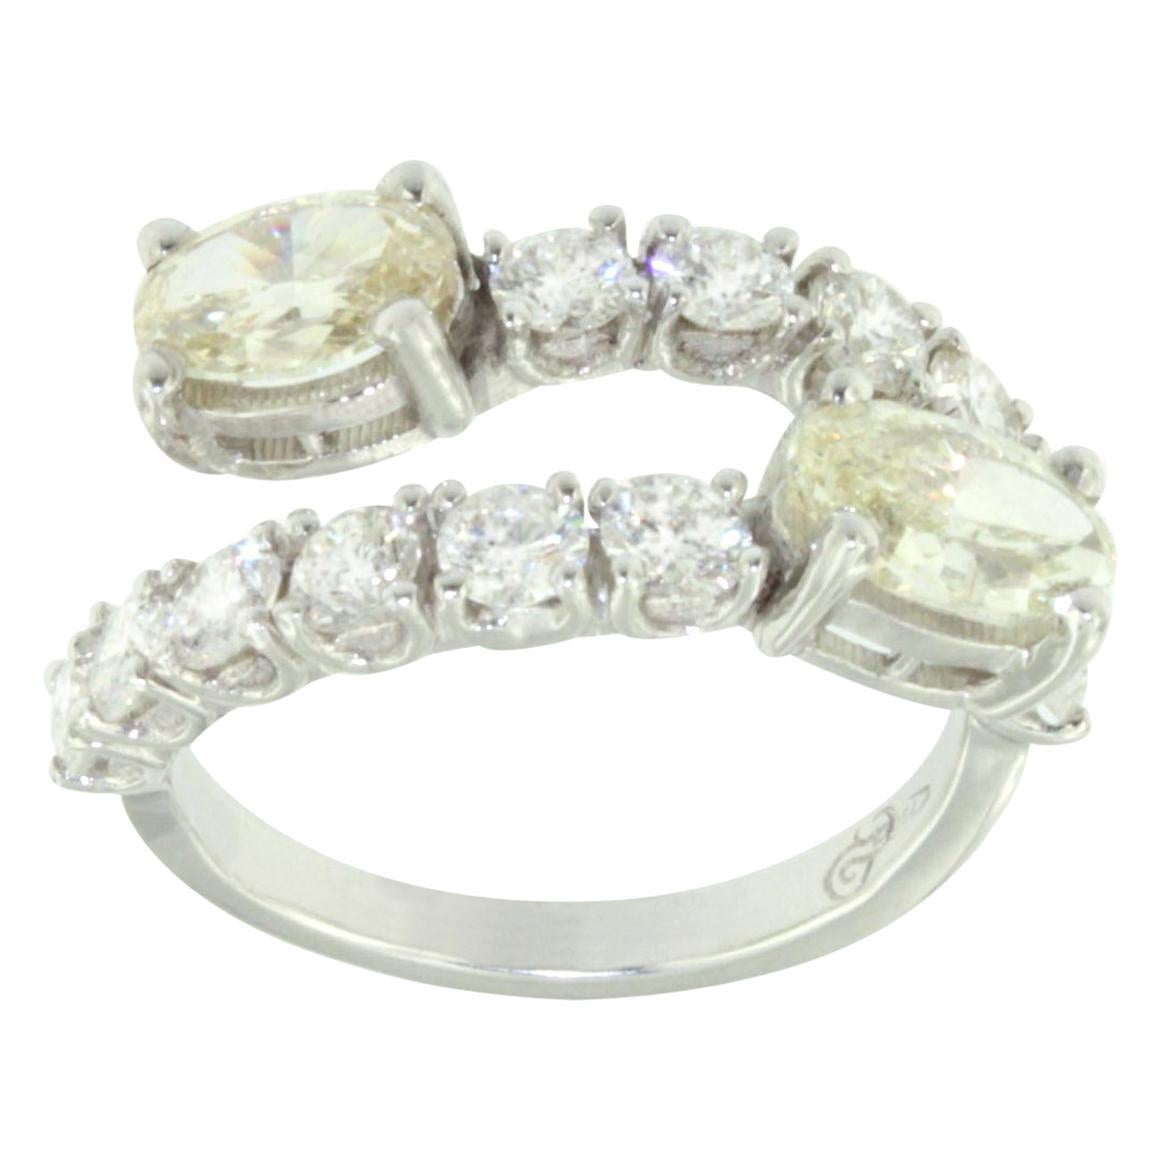 Erstaunlicher moderner Ring aus 18 Karat Weißgold mit weißen Diamanten und gelben Diamanten